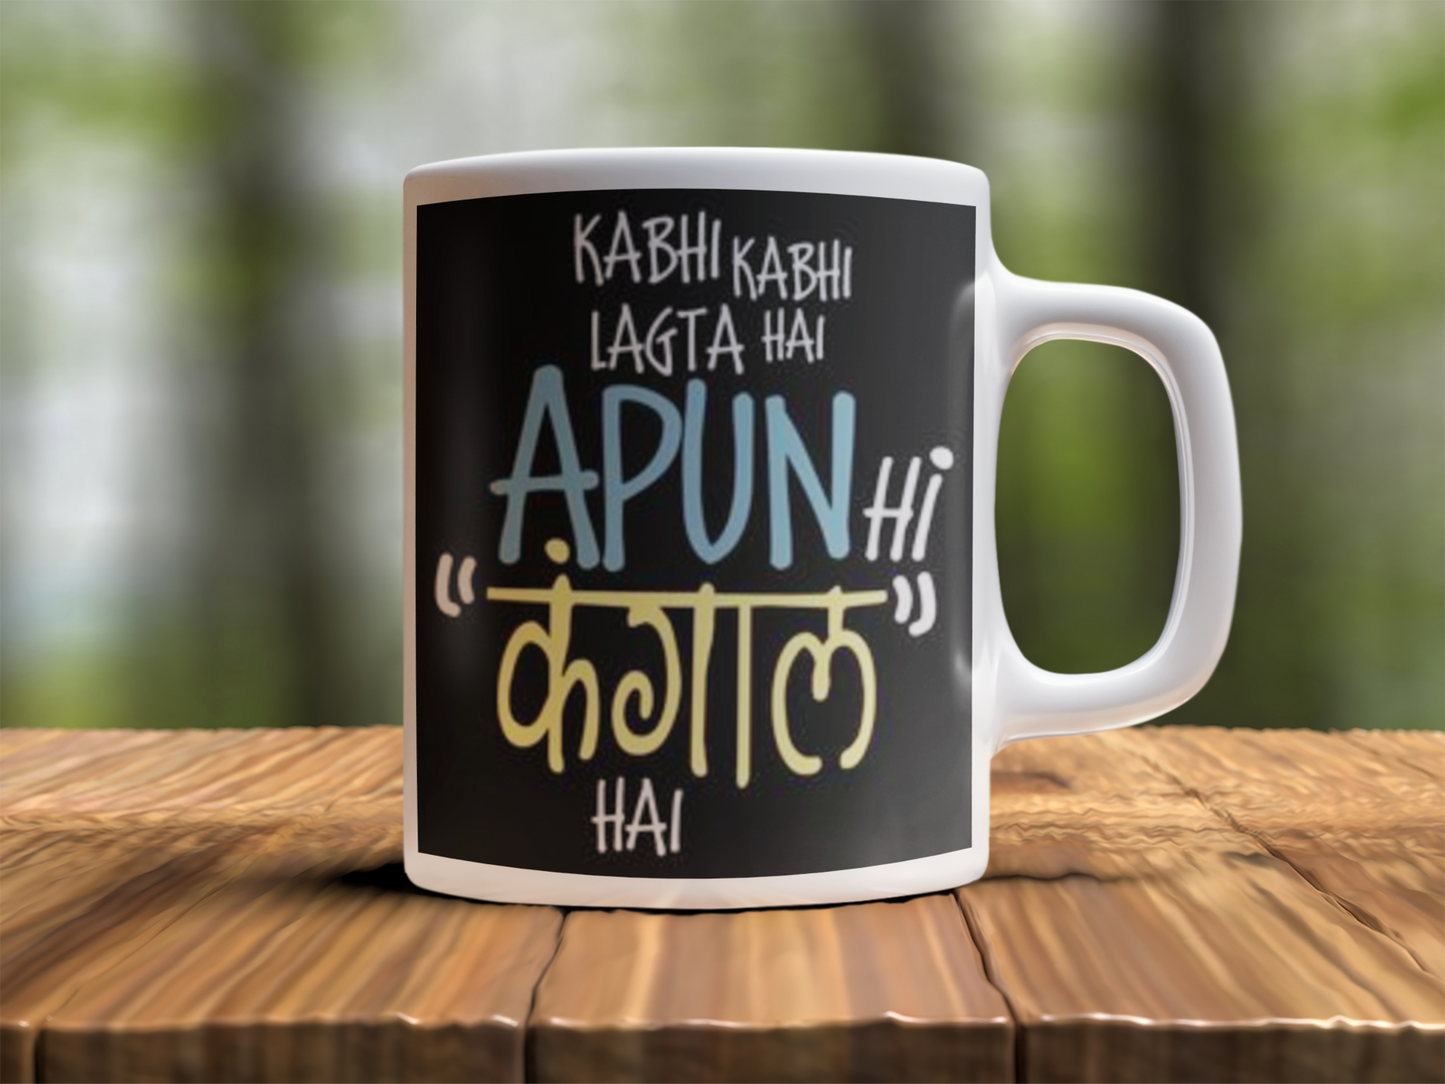 Kabhi kabhi lagta Design Photo Mug Printing